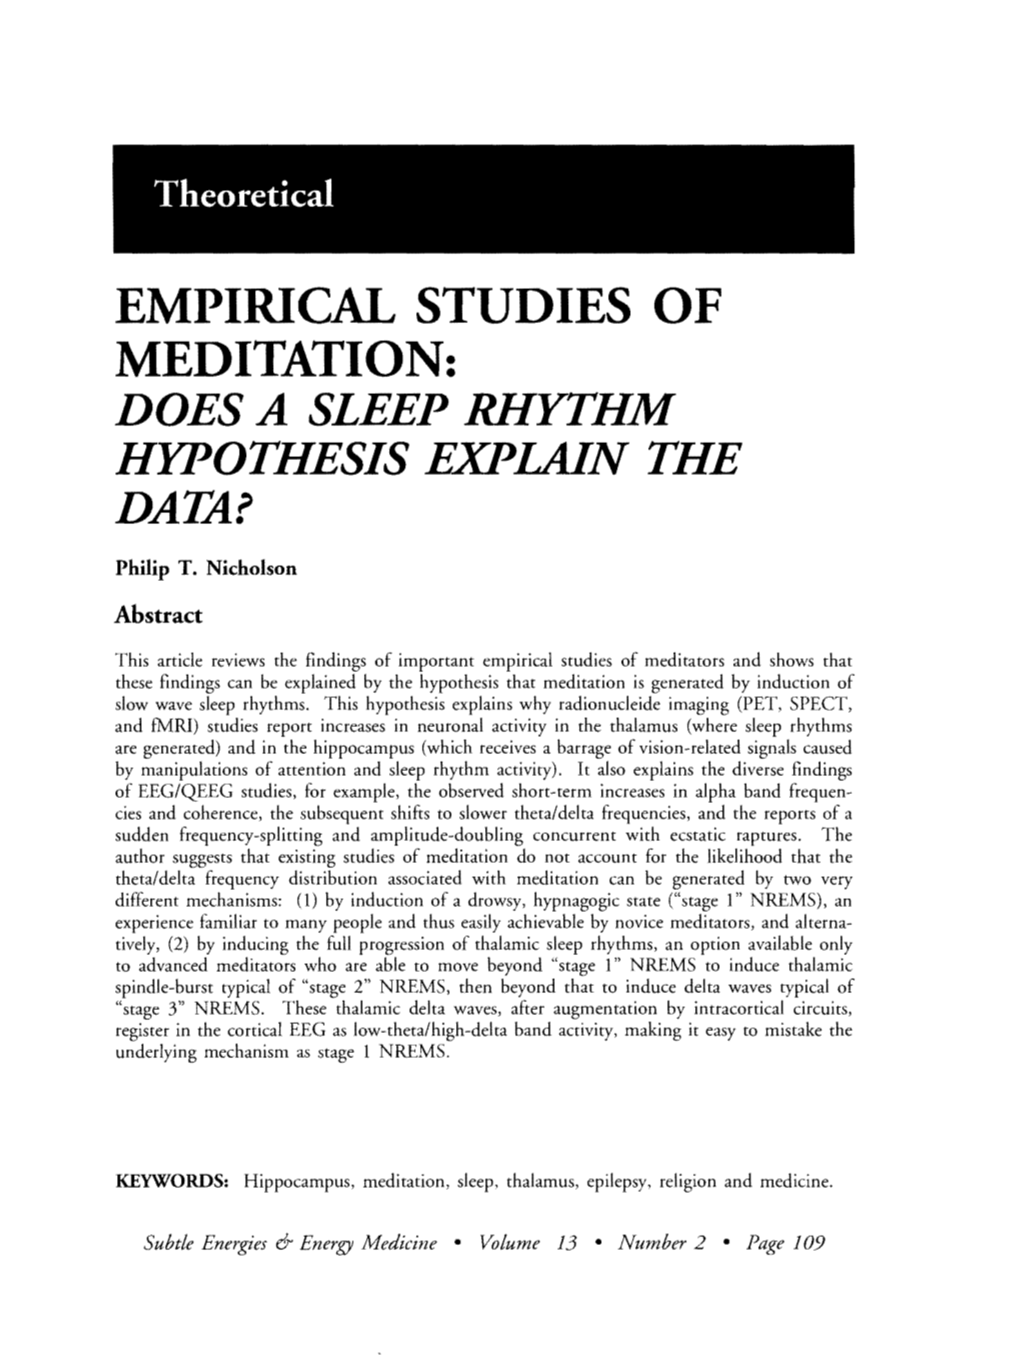 Empirical Studies of Meditation: Does a Sleep Rhythm Hypothesis Explain the Data?